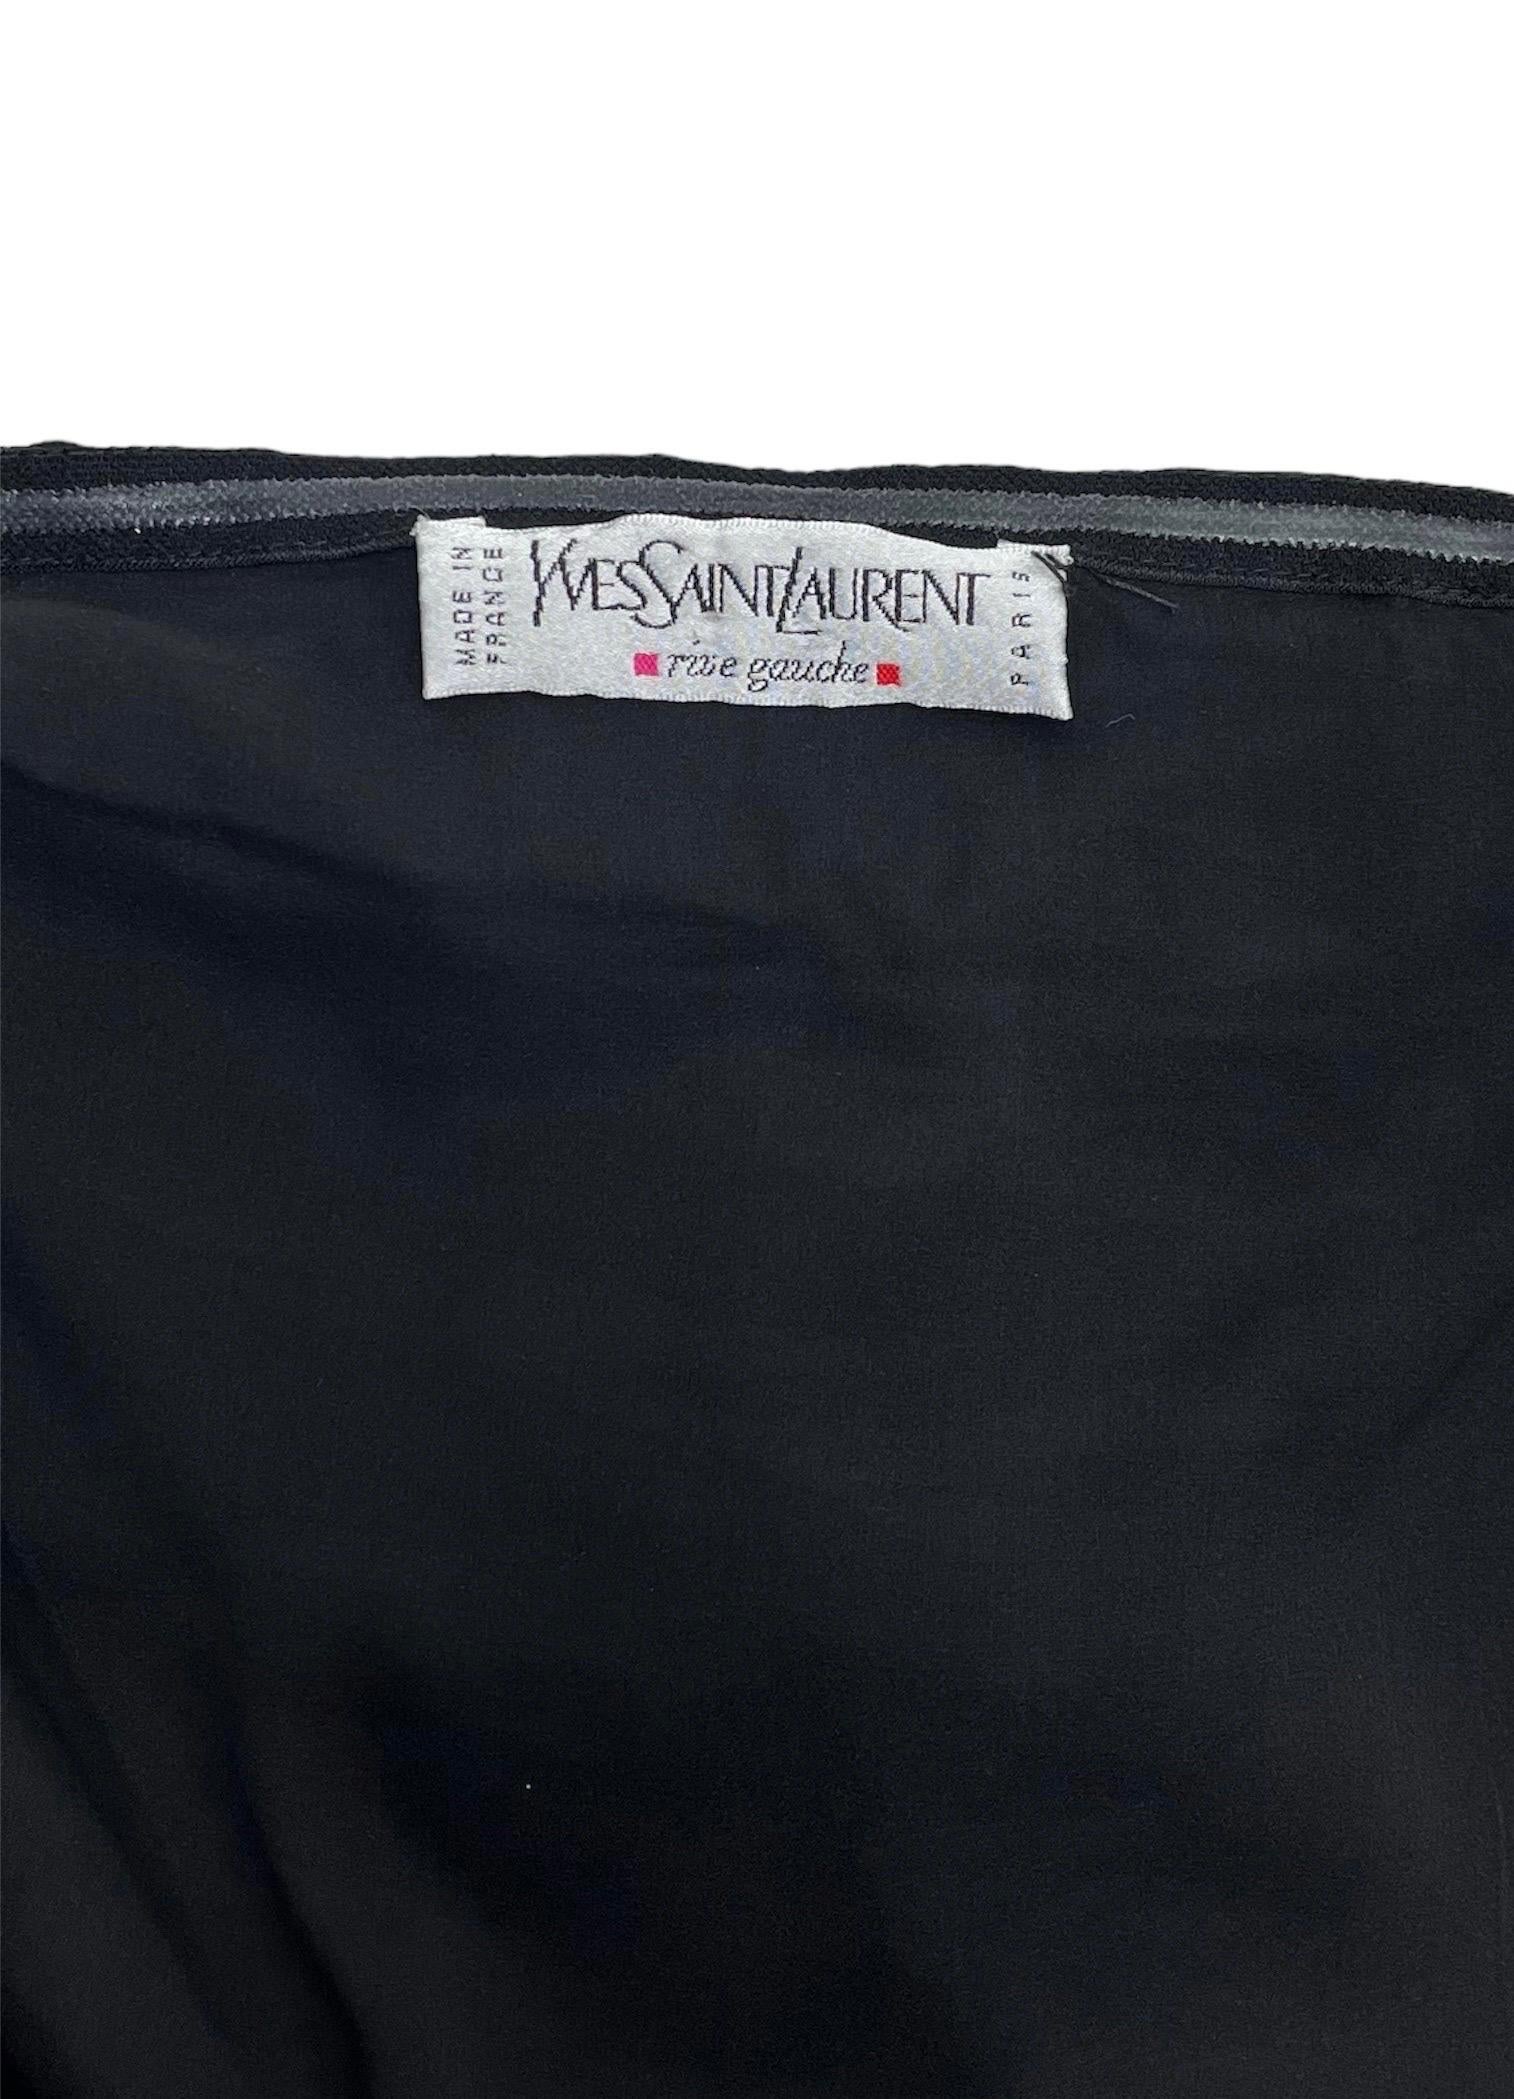 Women's S/S 2001 Vintage Tom Ford for Yves Saint Laurent black silk dress For Sale